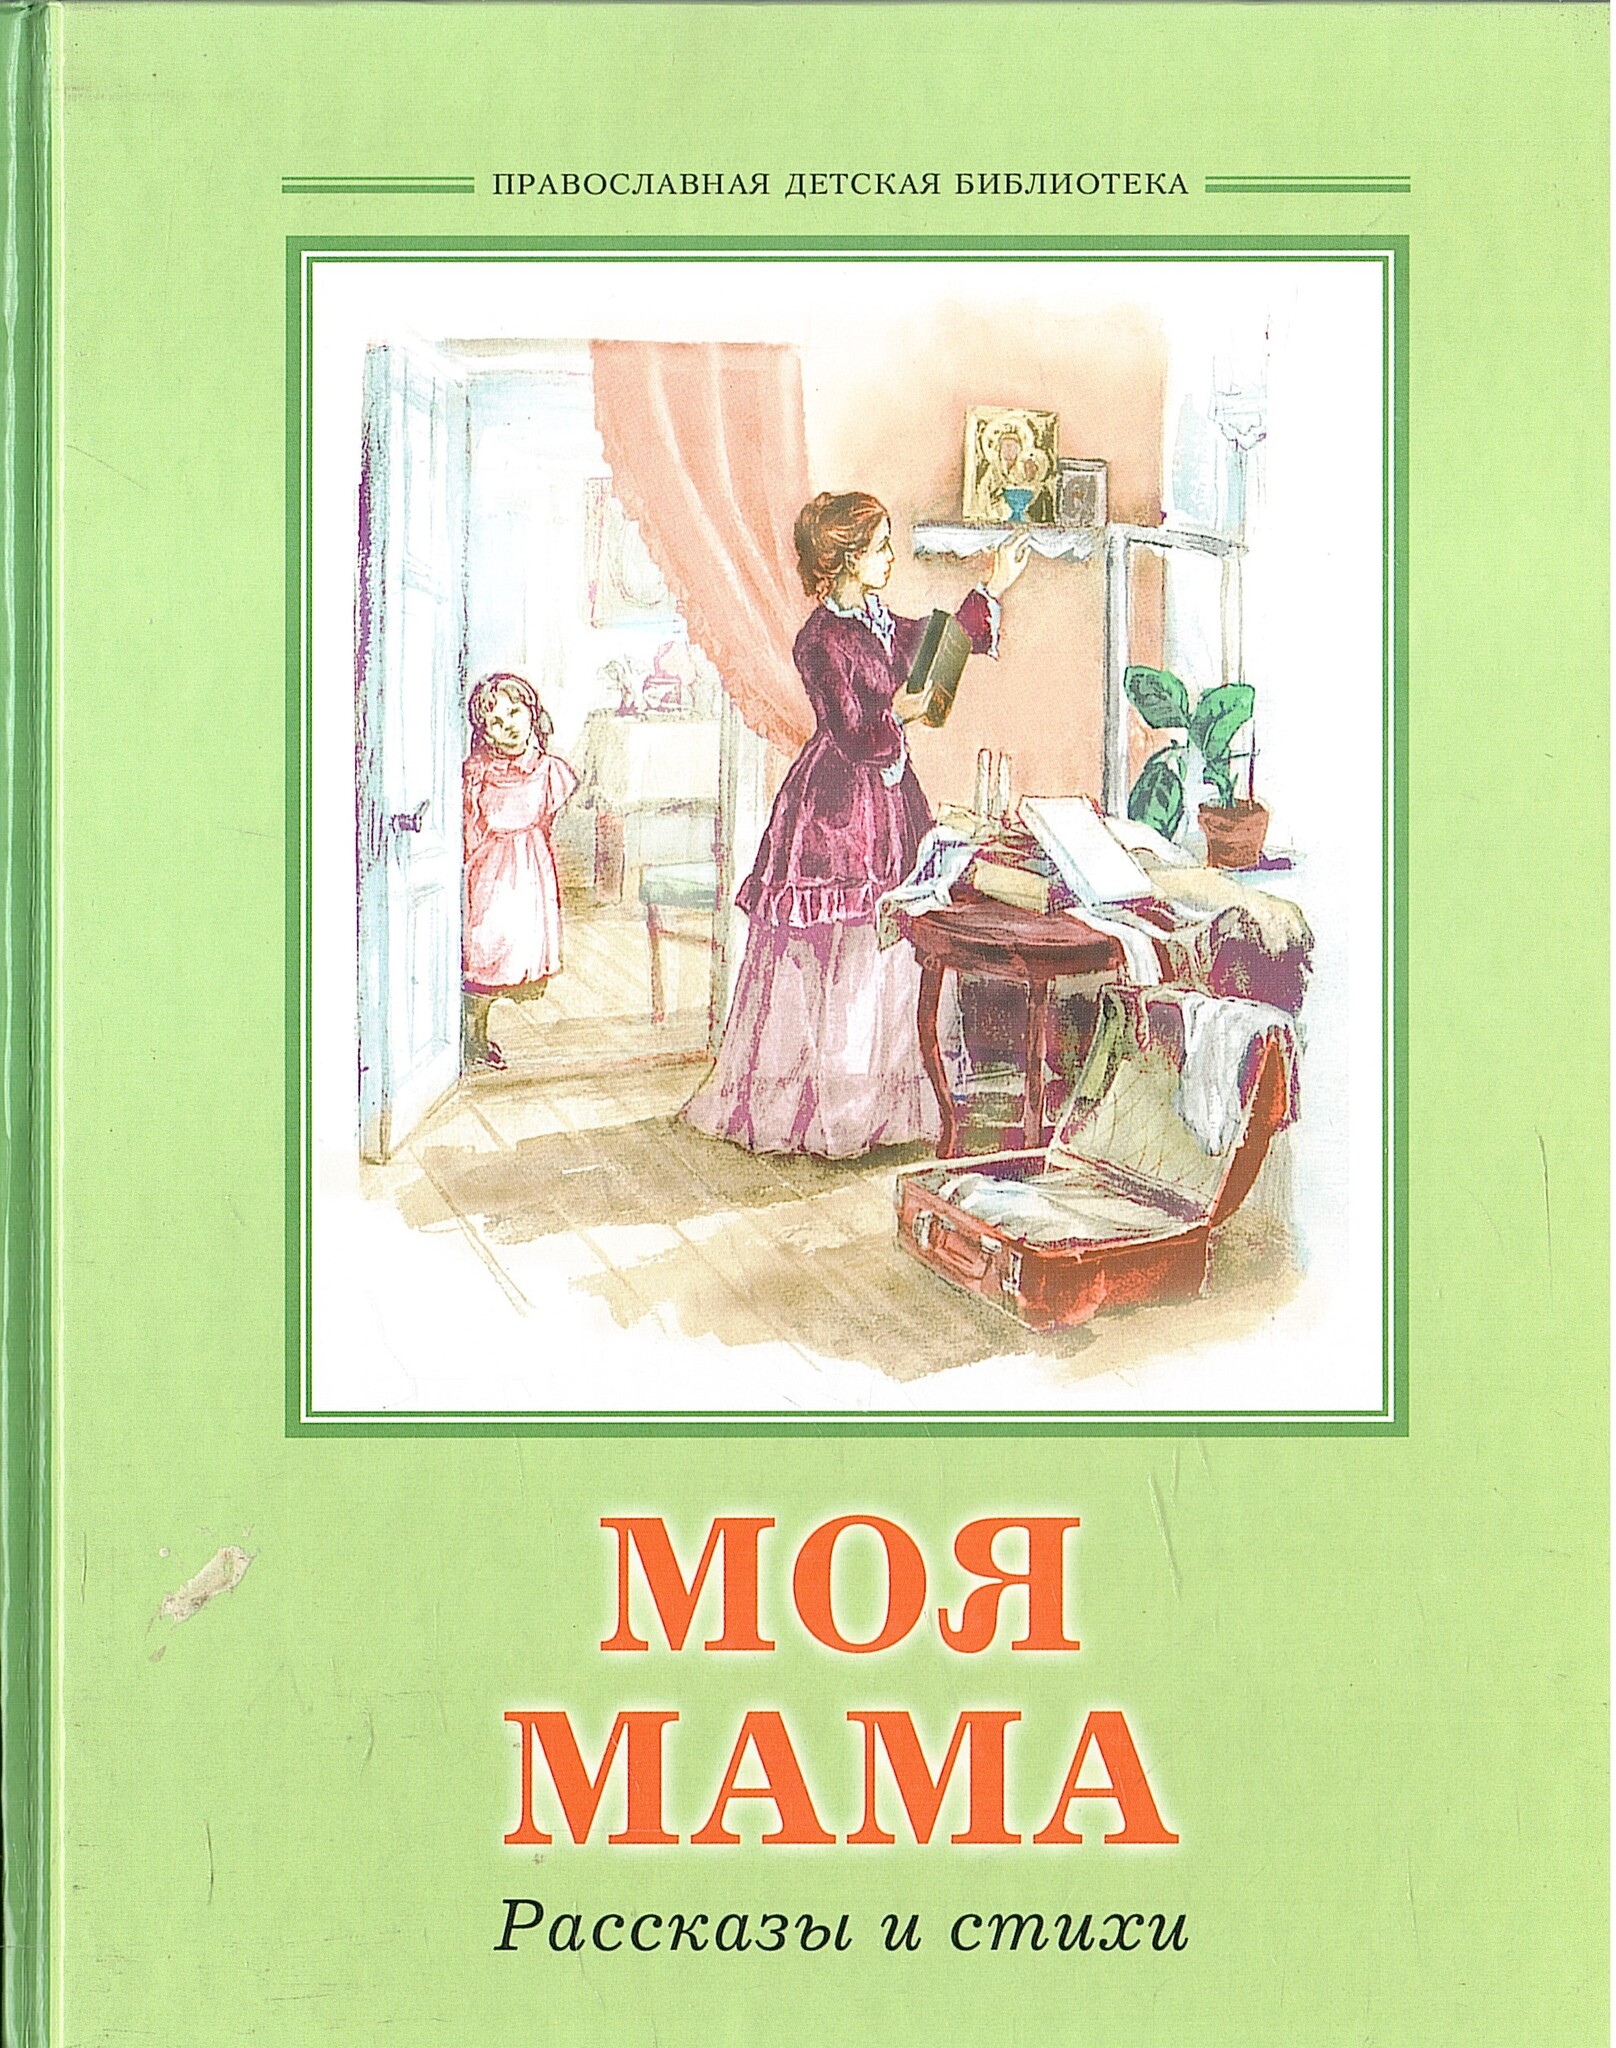 Мамочка рассказ. Книги о маме. Произведения о маме. Стихи и рассказы о маме. Детские книги о маме.